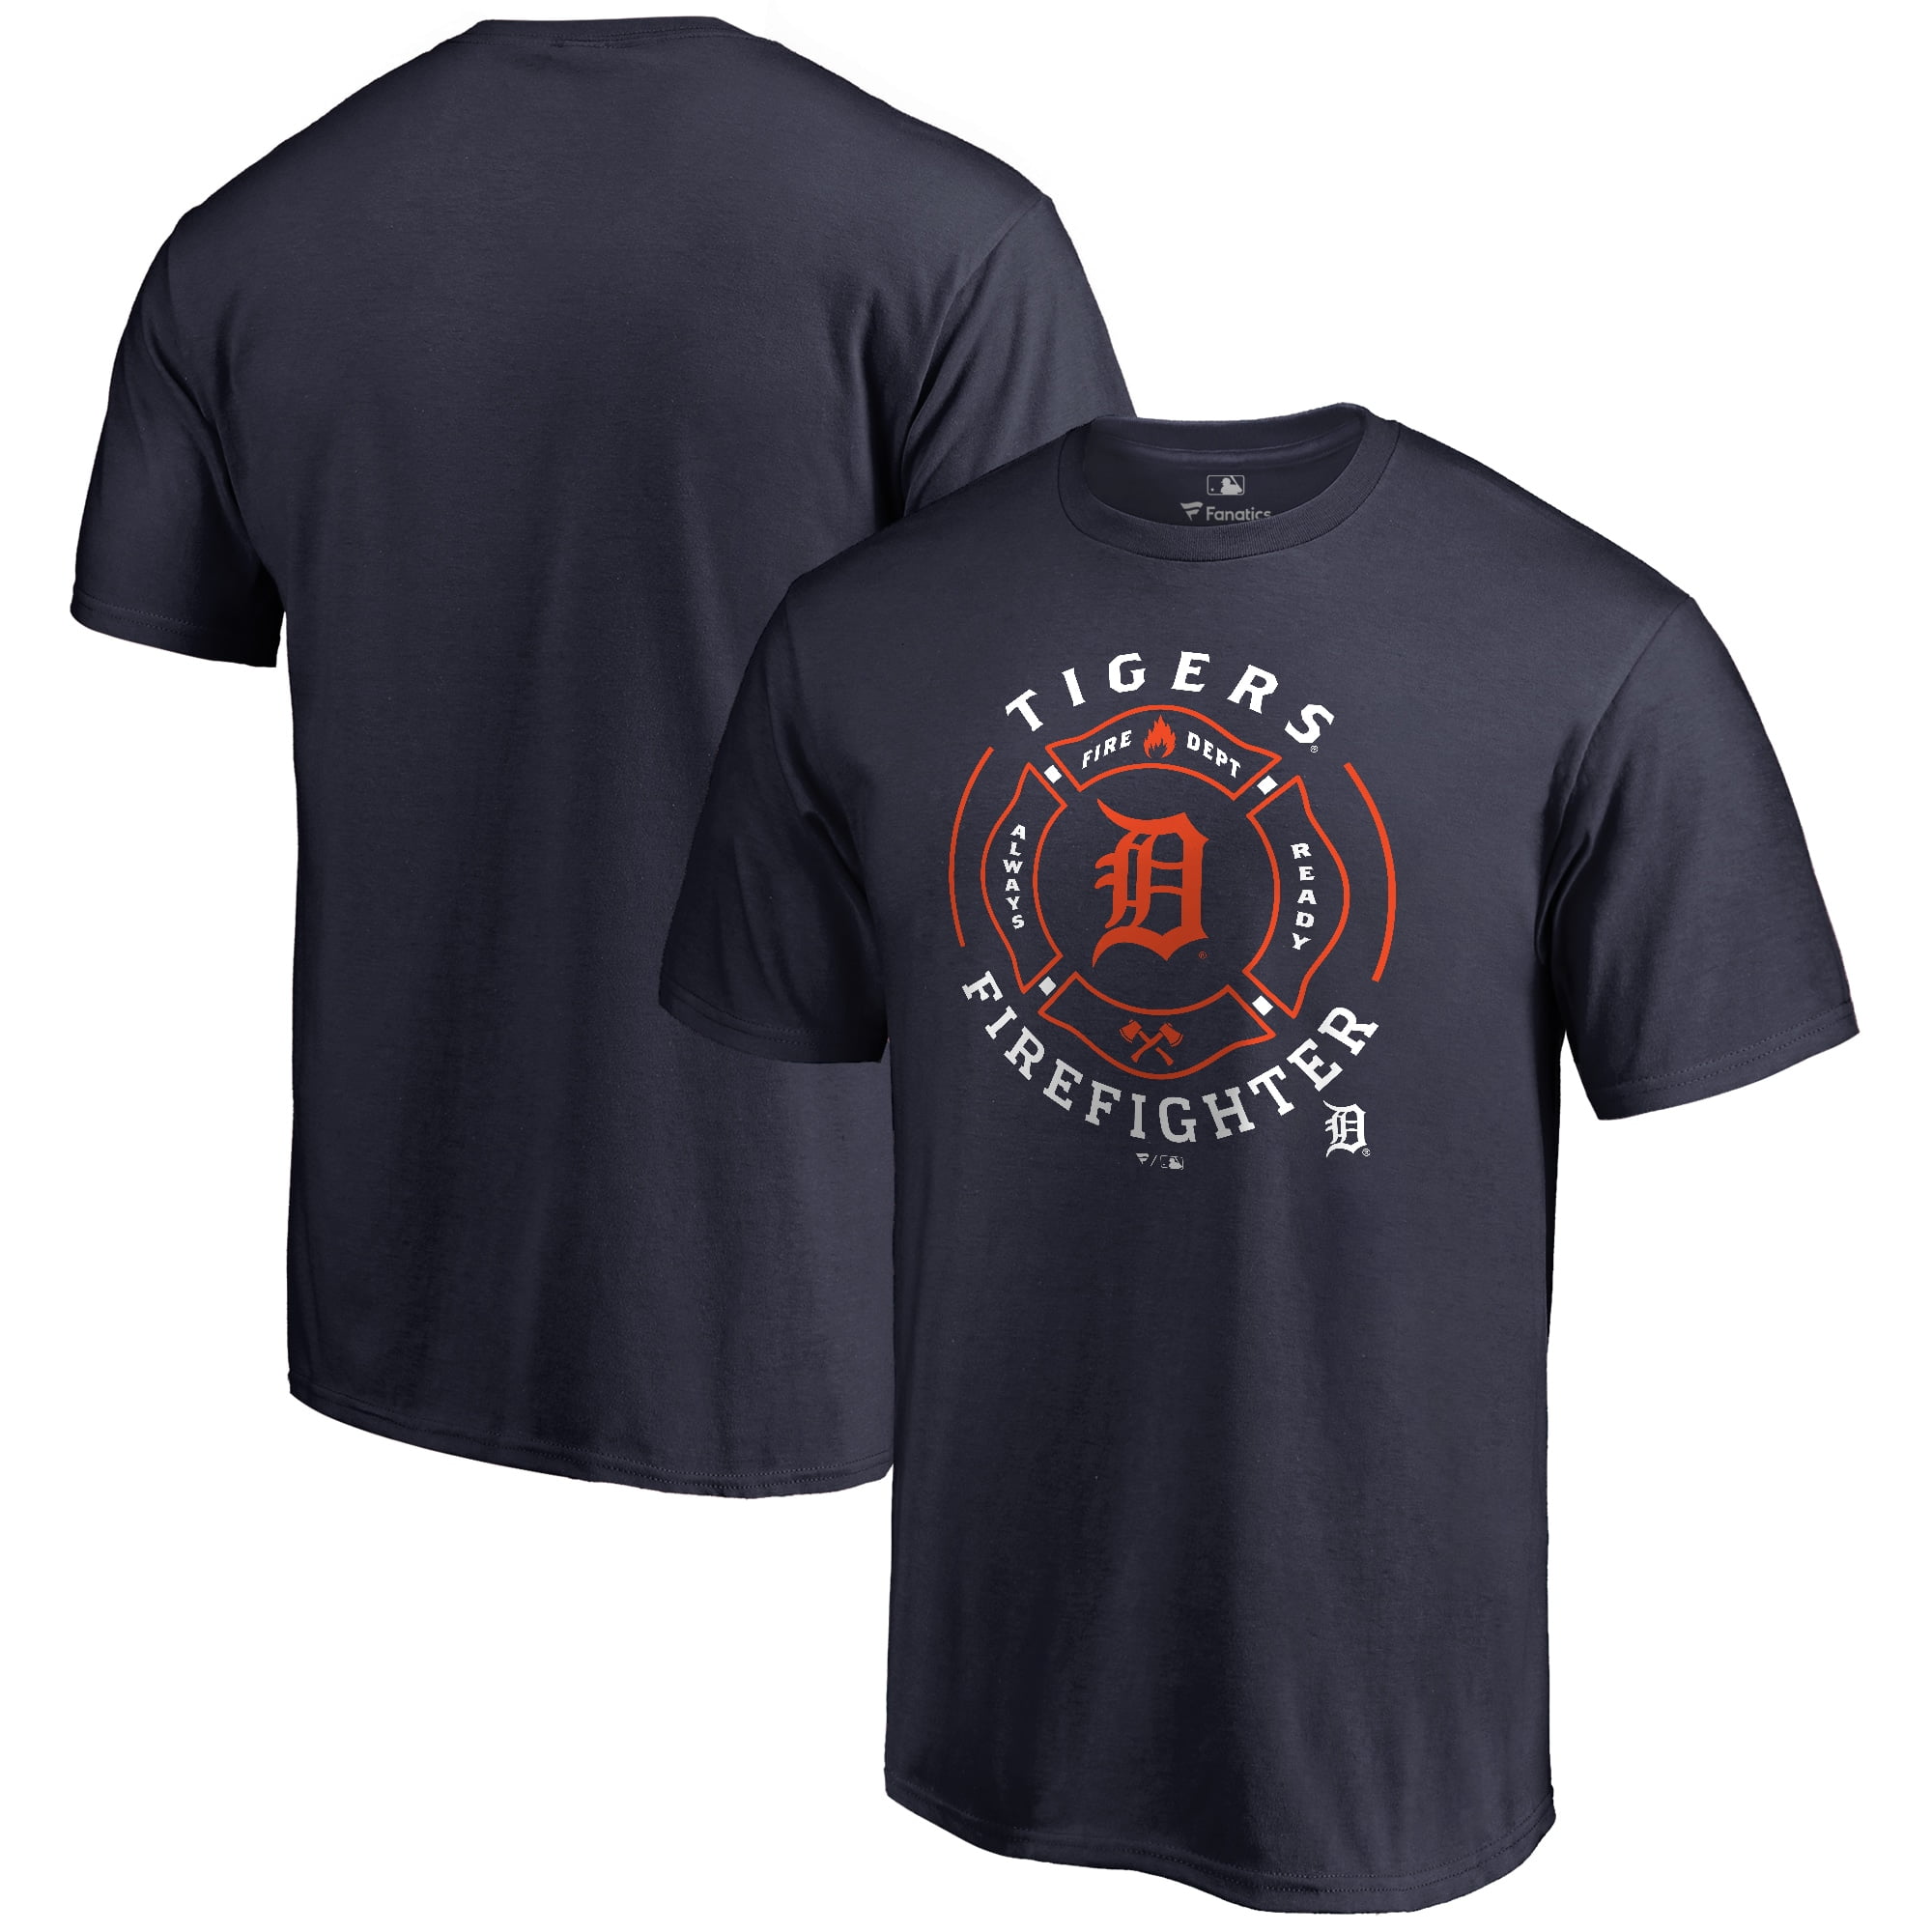 New Orange City Florida Fire Department Firefighter Navy T-Shirt S-4XL